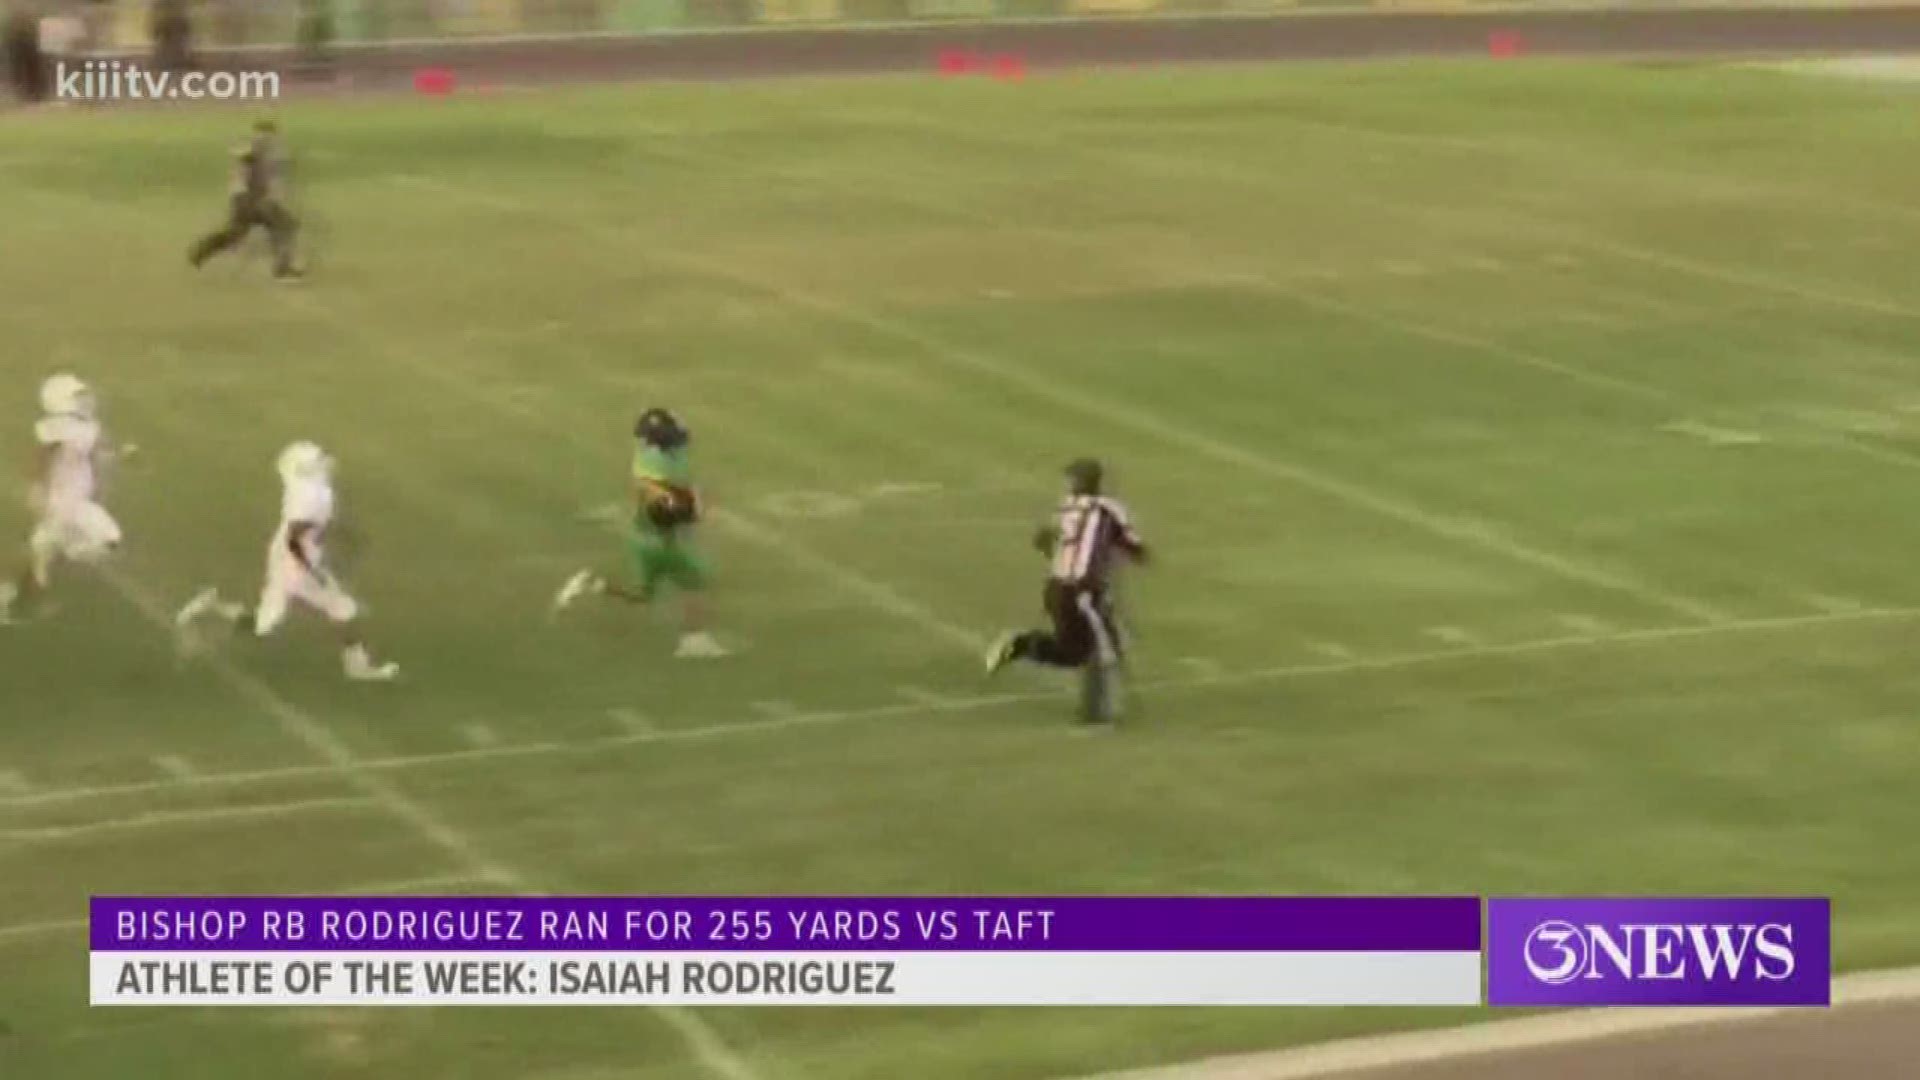 This week's 3News Athlete of the Week belongs to Bishop's Isaiah Rodriguez!